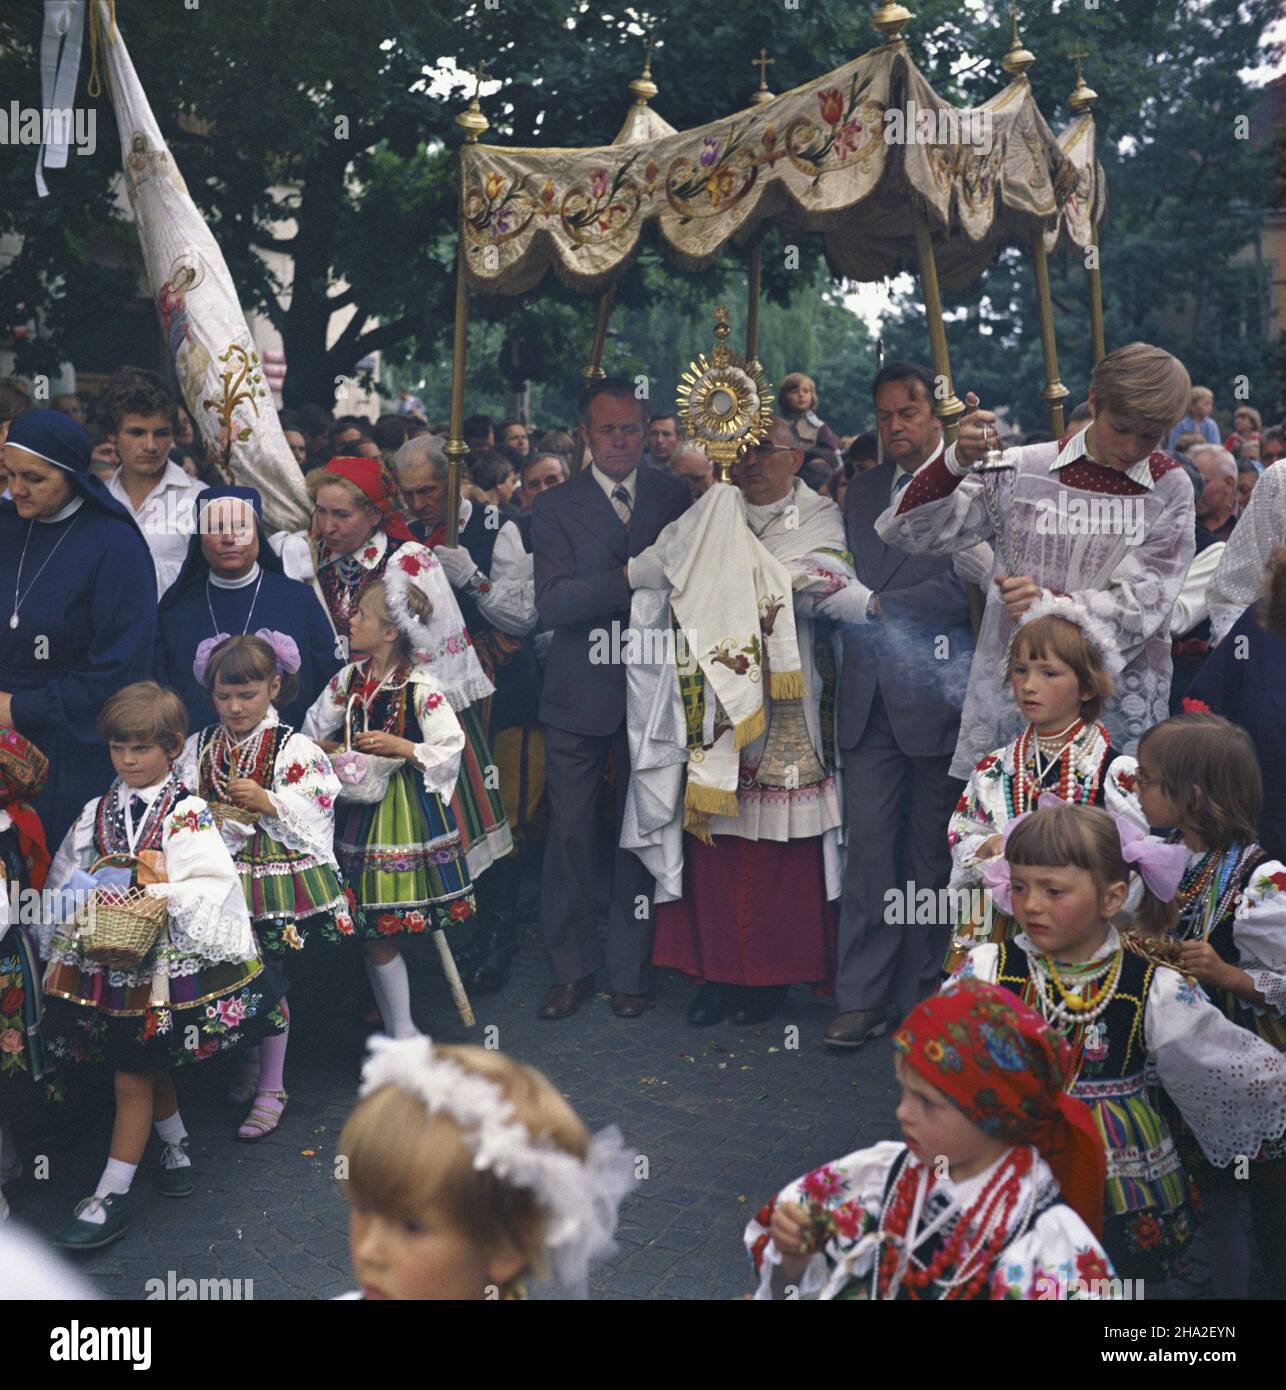 Z³aków Koœcielny, 18.06.1981. Okolice £owicza. Procesja w Œwiêto Najœwiêtszego Cia³a i Krwi Chrystusa (Bo¿ego Cia³a). Nz. ksi¹dz niesie monstrancjê z Najœwiêtszym Sakramentem.  msa  PAP/Jan Morek         Zlakow Koscielny, 18 June 1981. A priest carries a monstrance with the Holy Sacrament during a Corpus Christi procession.  msa  PAP/Jan Morek Stock Photo